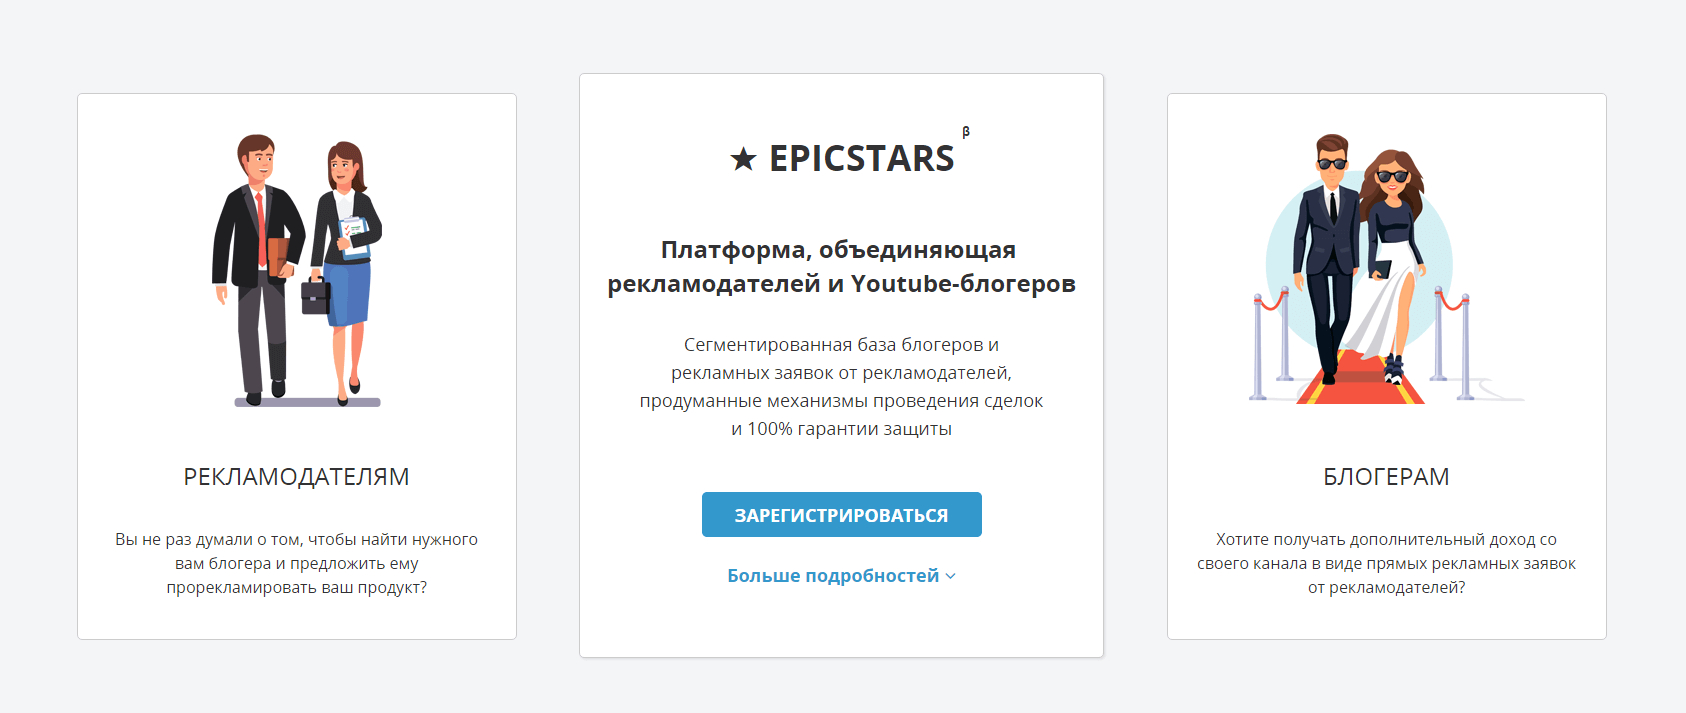 epicstars.png